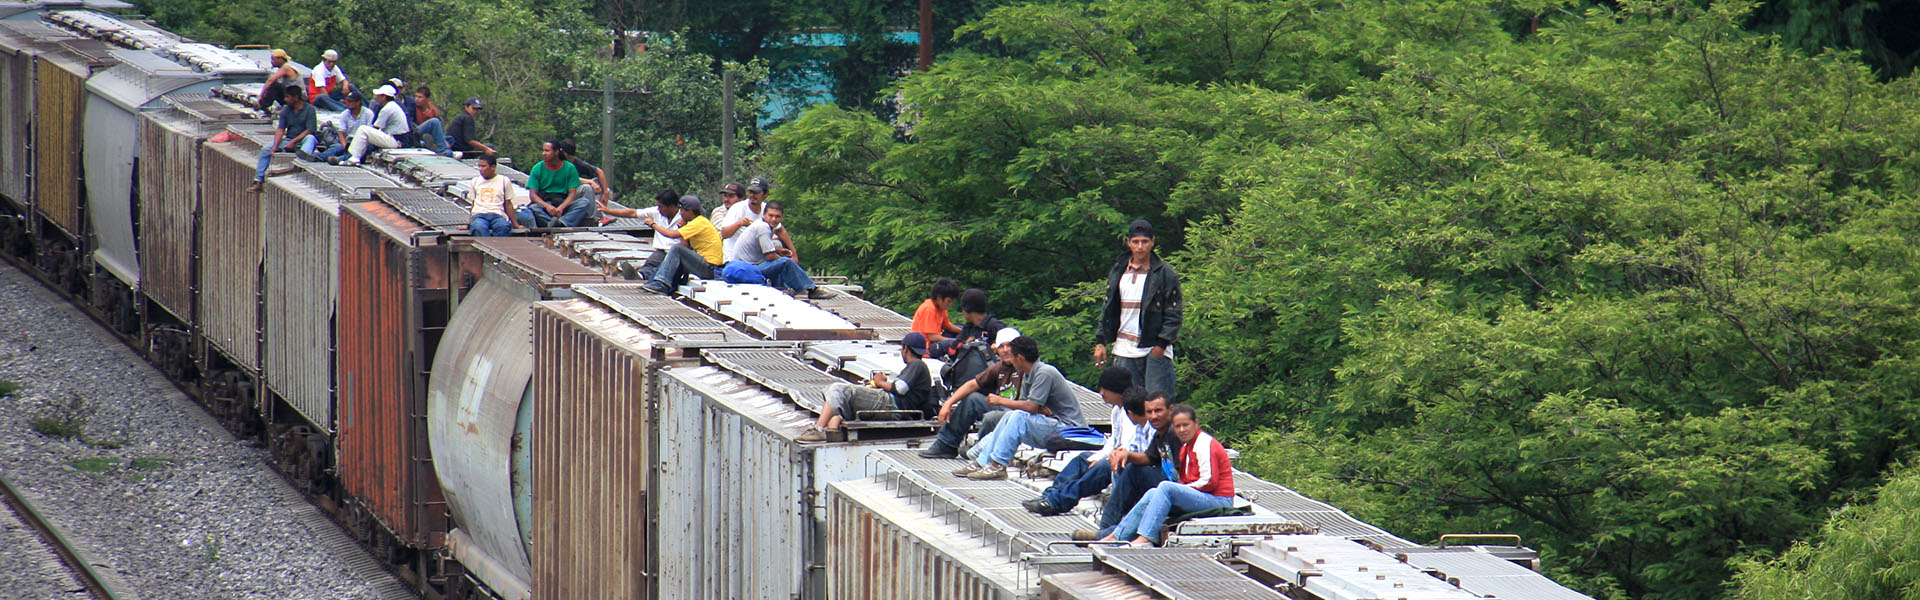 Cincuenta años de compromiso  por la justicia social  en América Latina